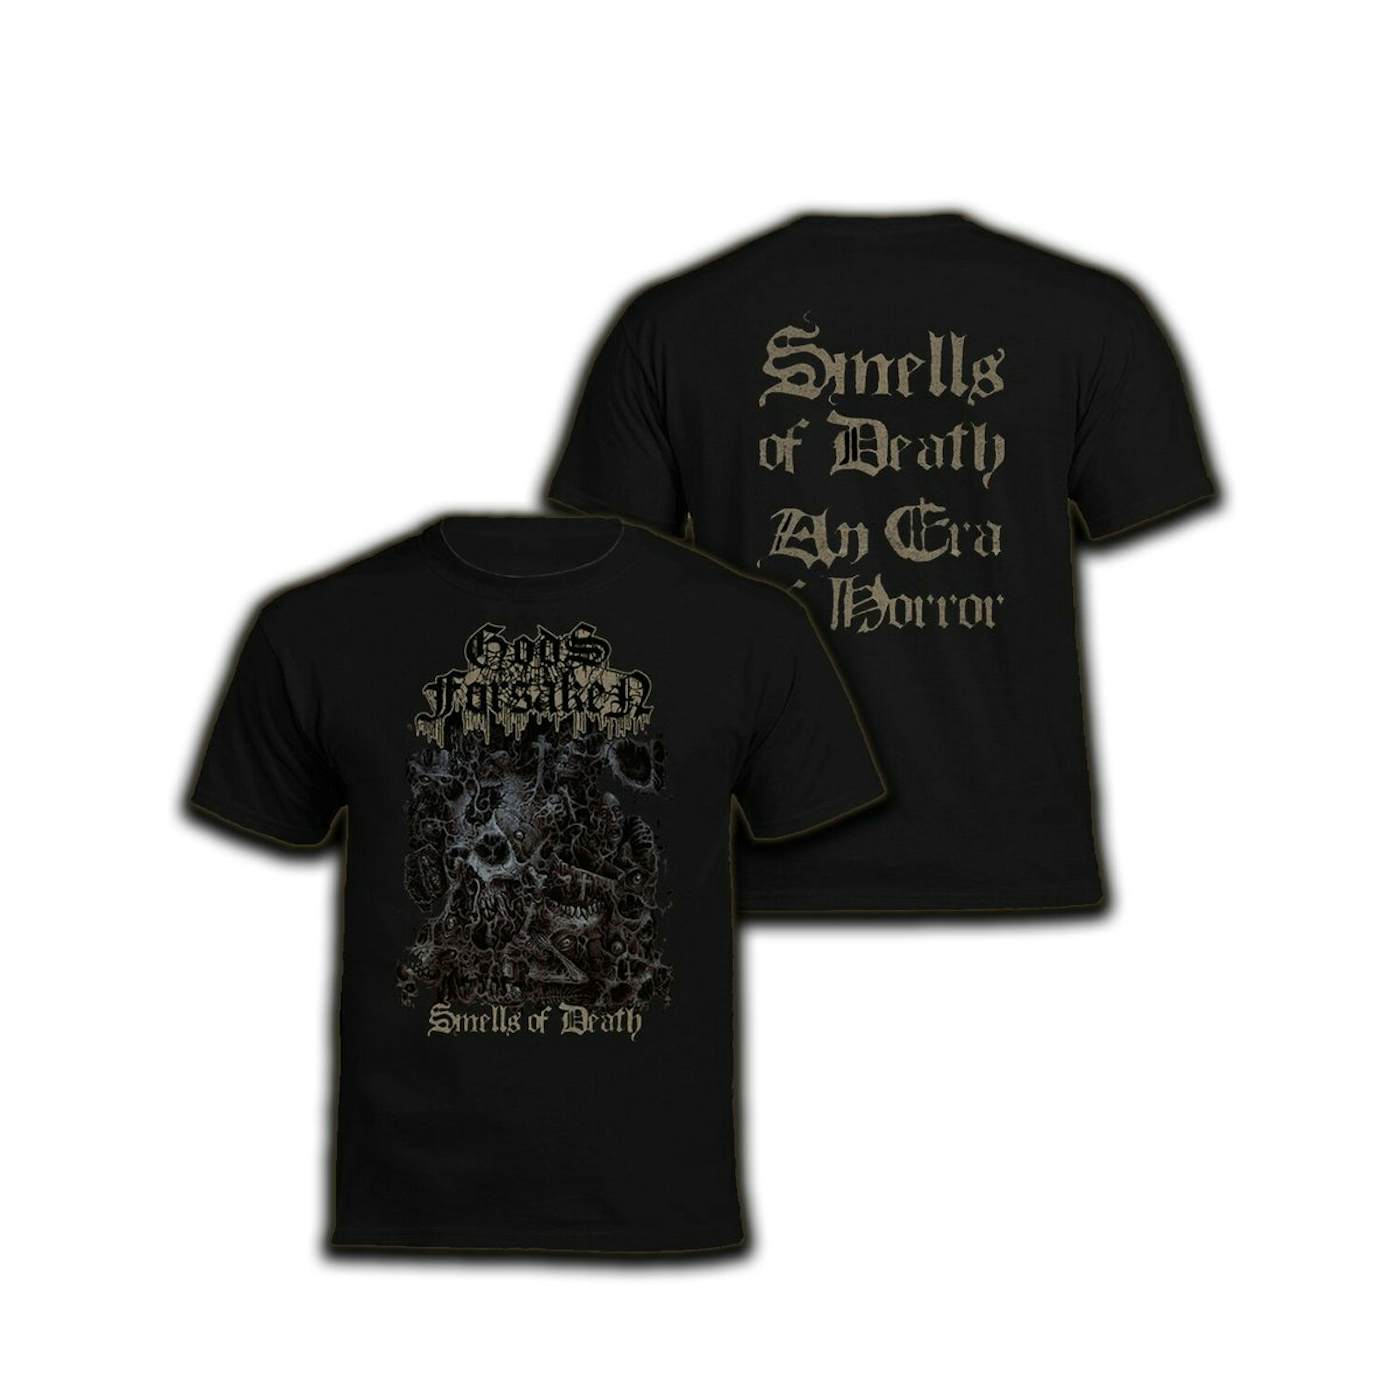 Gods Forsaken "Smells of death" T-Shirt